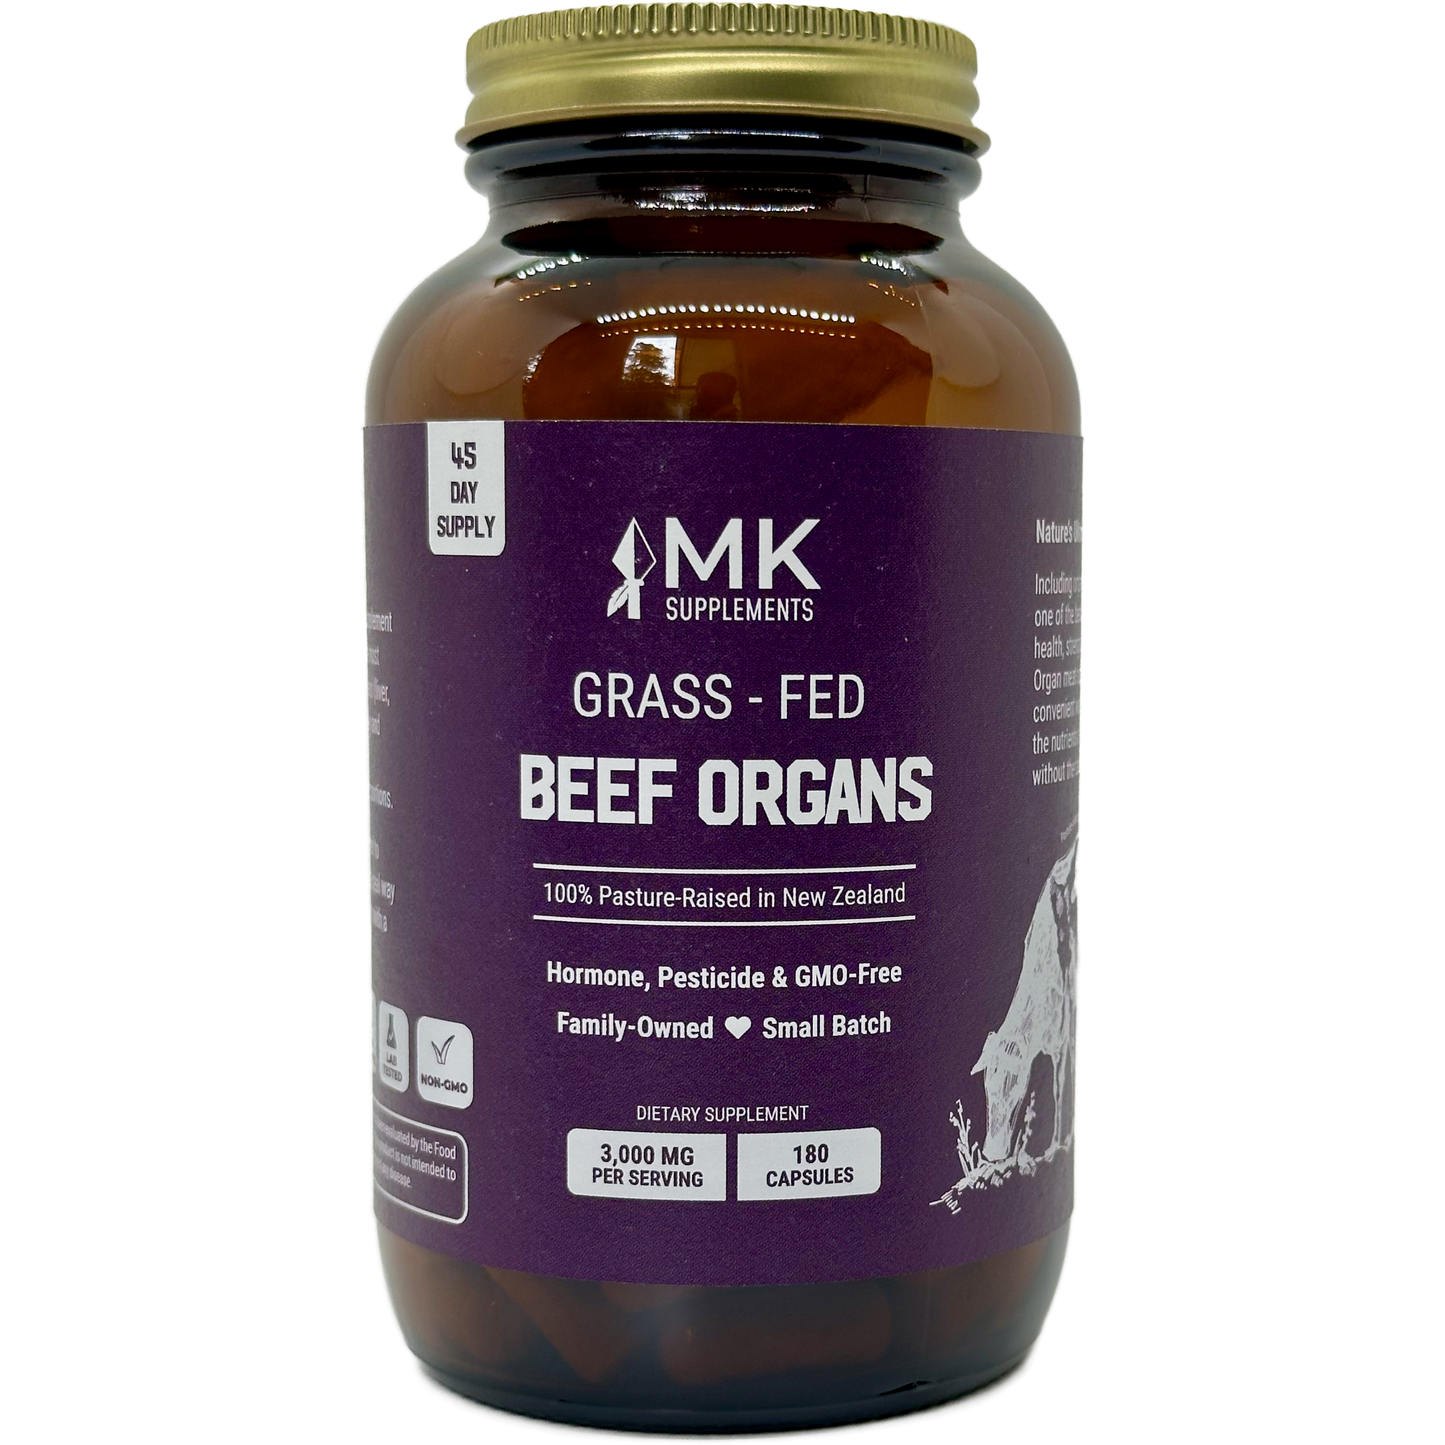 MK Supplements Grass-Fed Beef Organs